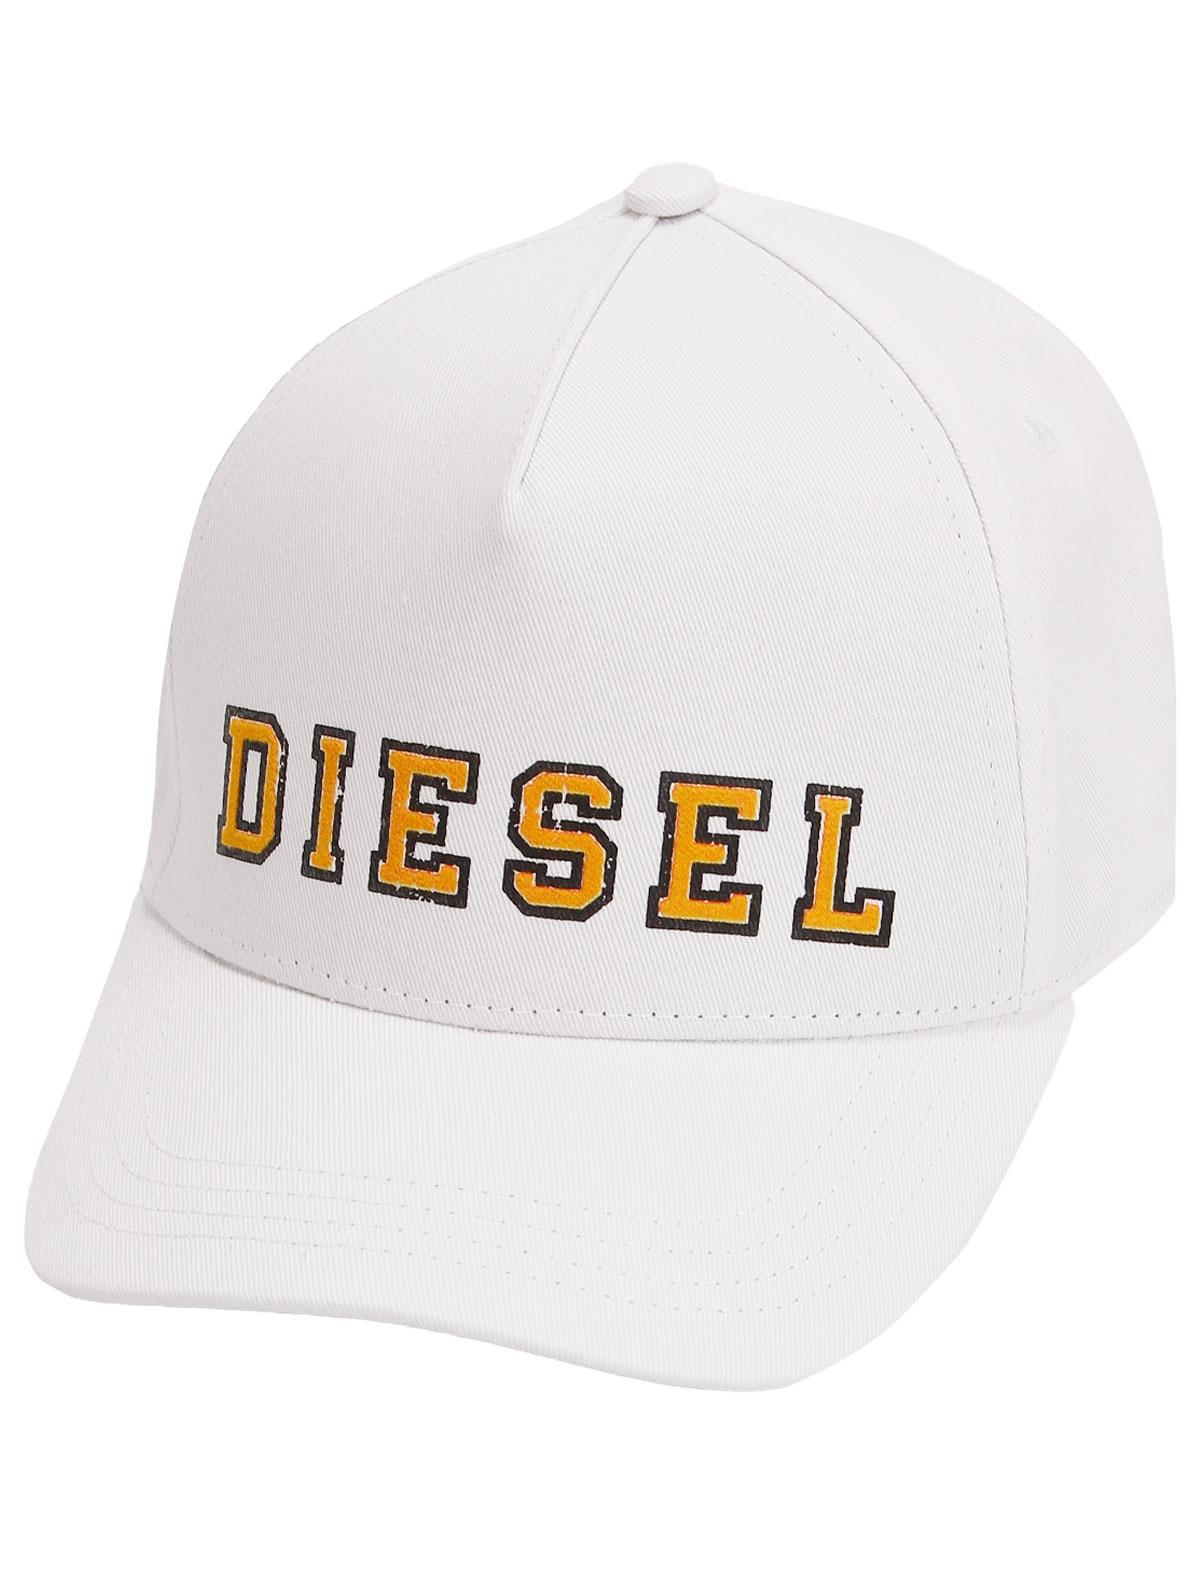 Кепка Diesel